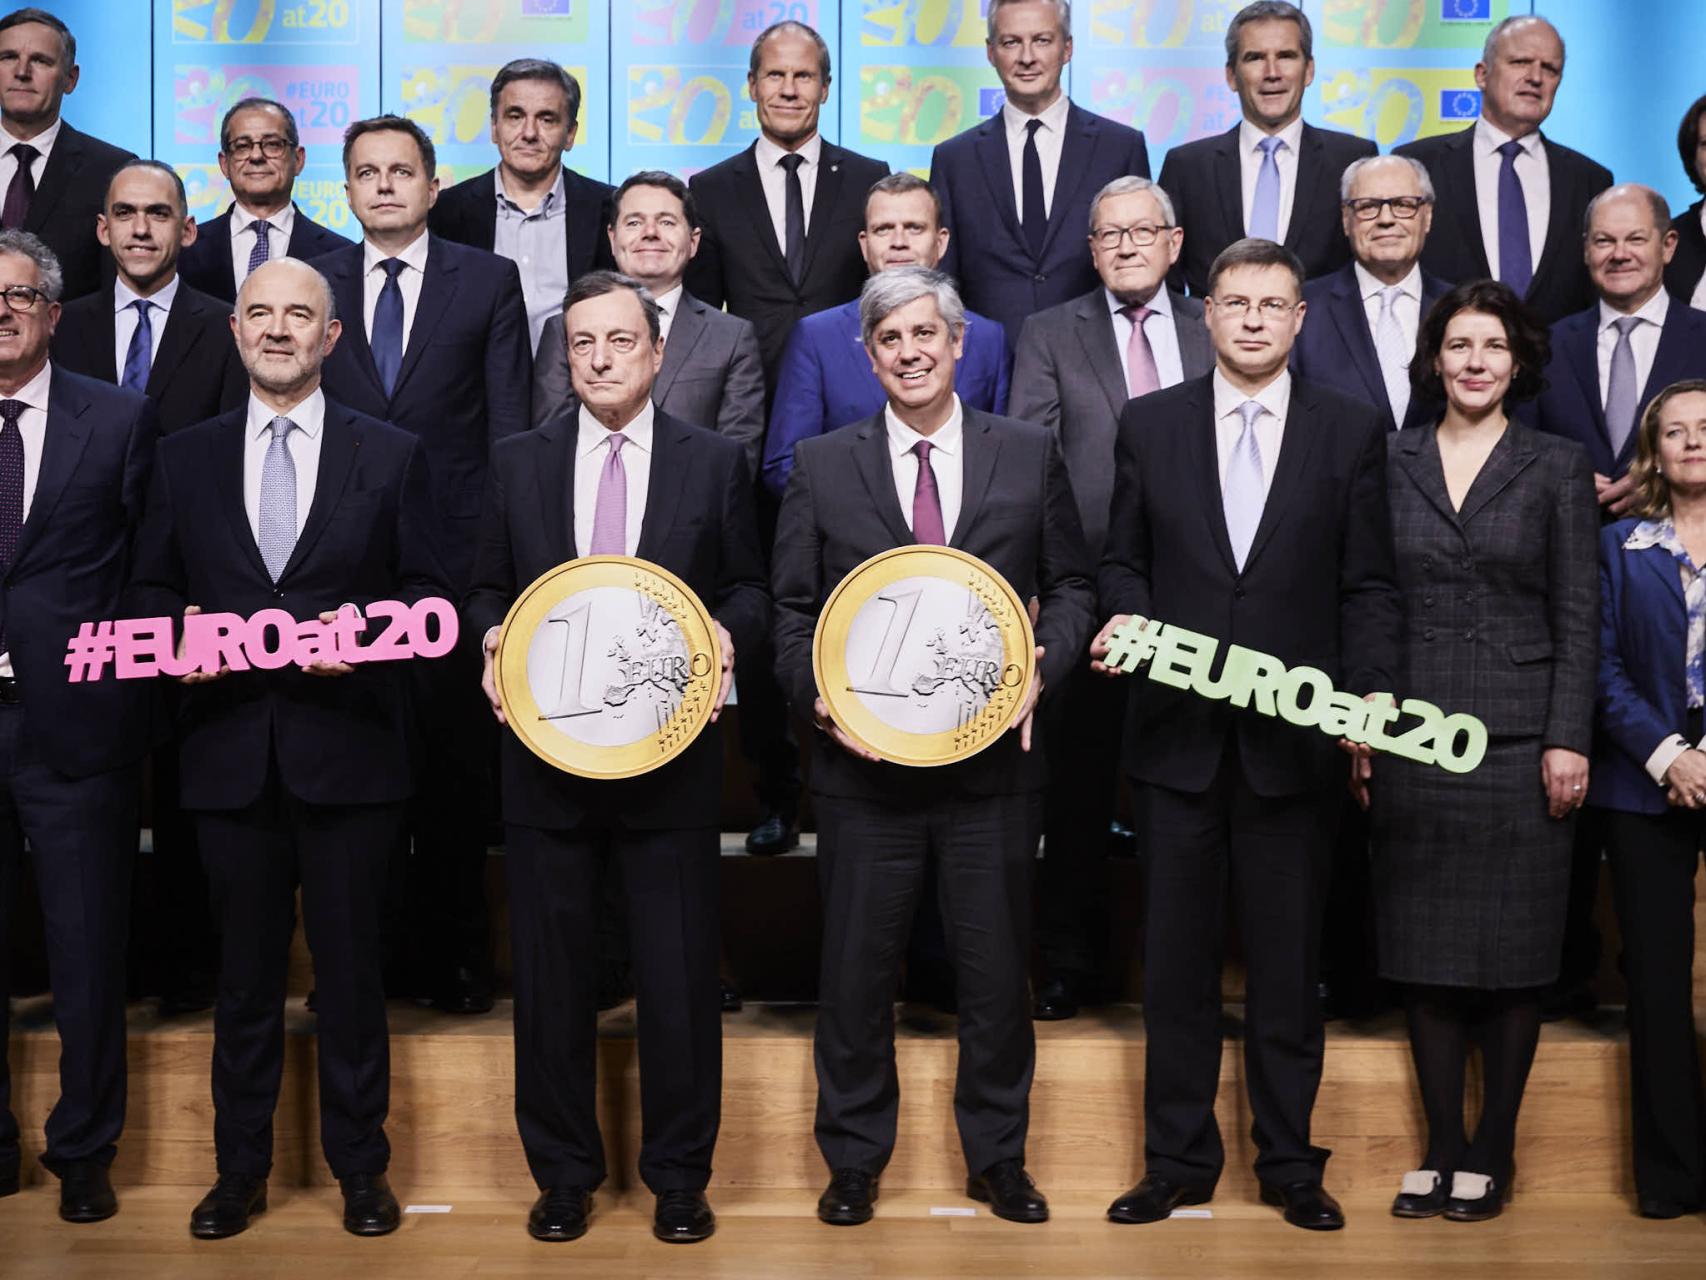 La foto de familia de los 20 años del euro